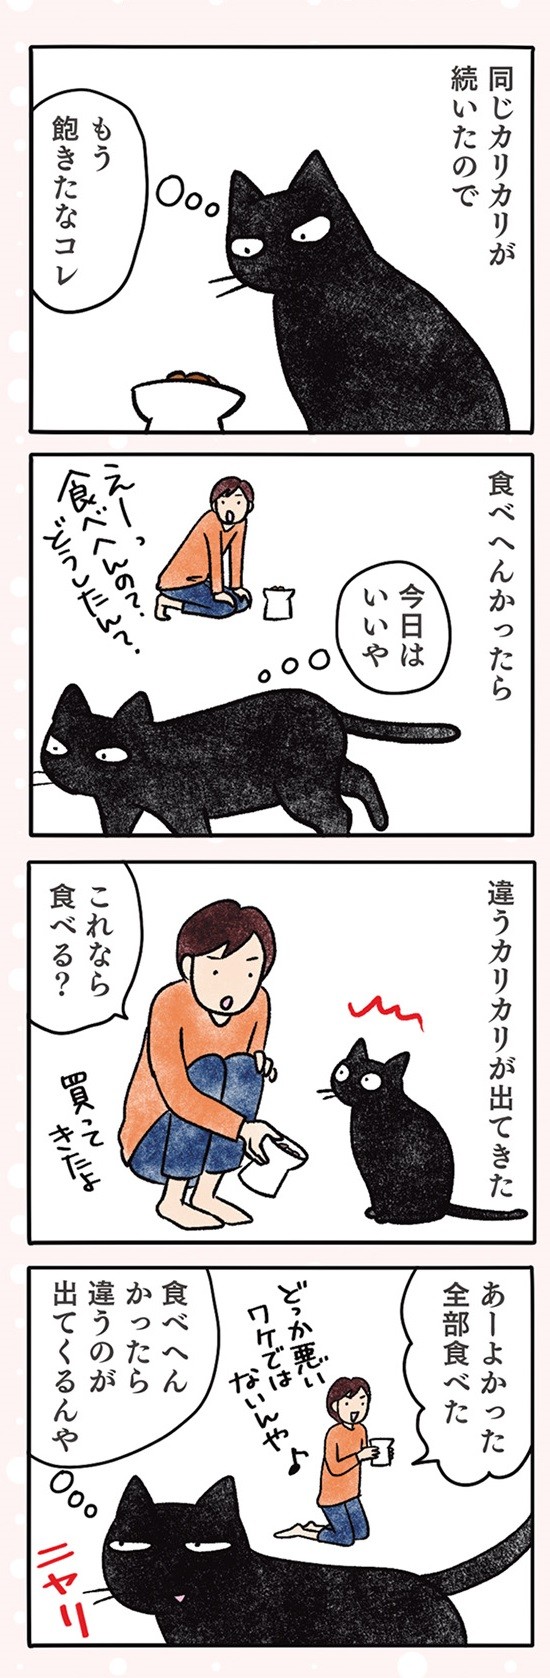 黒猫ナノとキジシロ猫きなこ